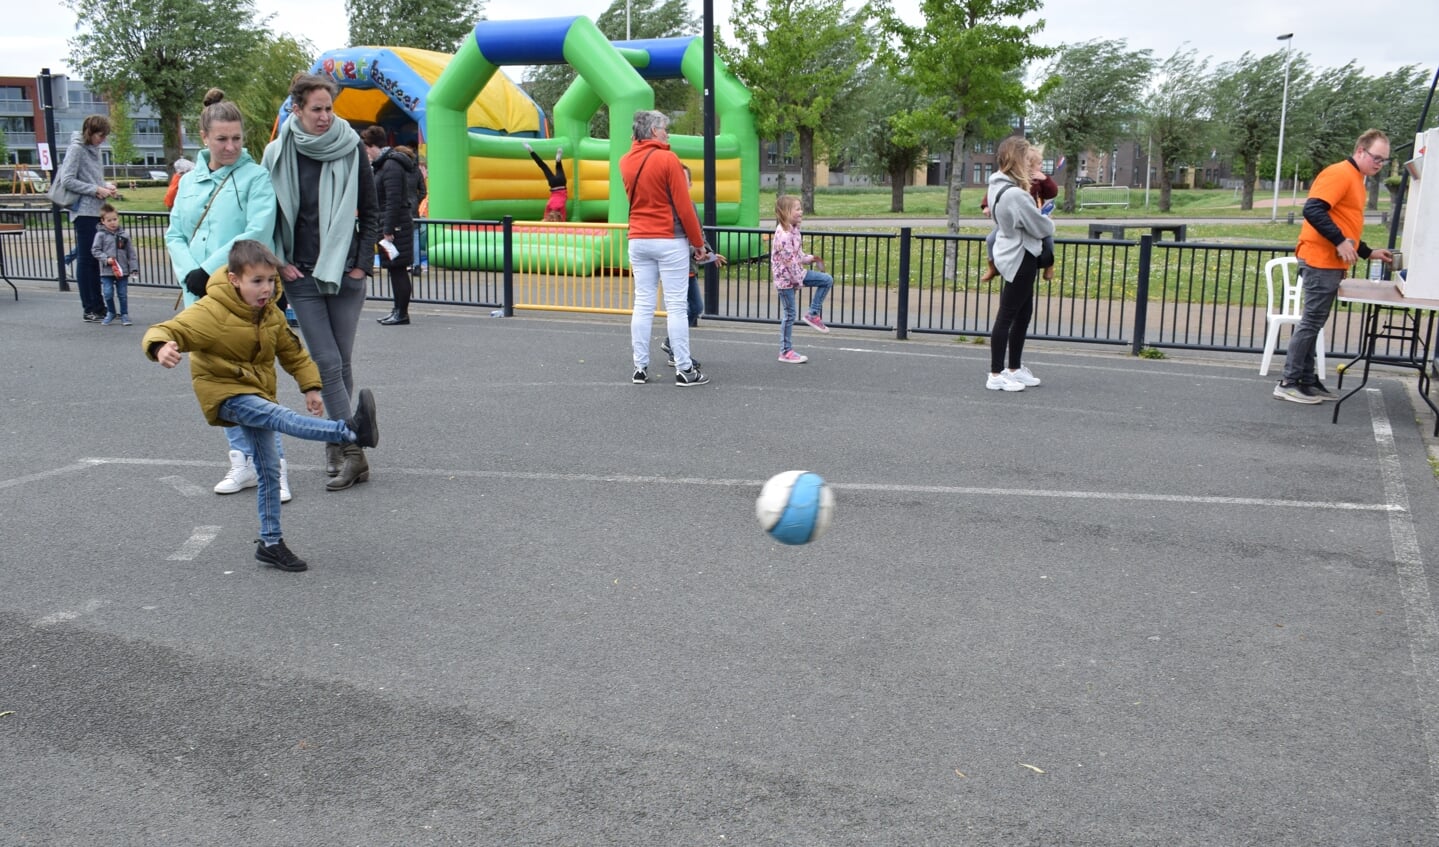 Spelletjes doen op het kinderplein in het Schoenmakerspark. FOTO STELLA MARIJNISSEN